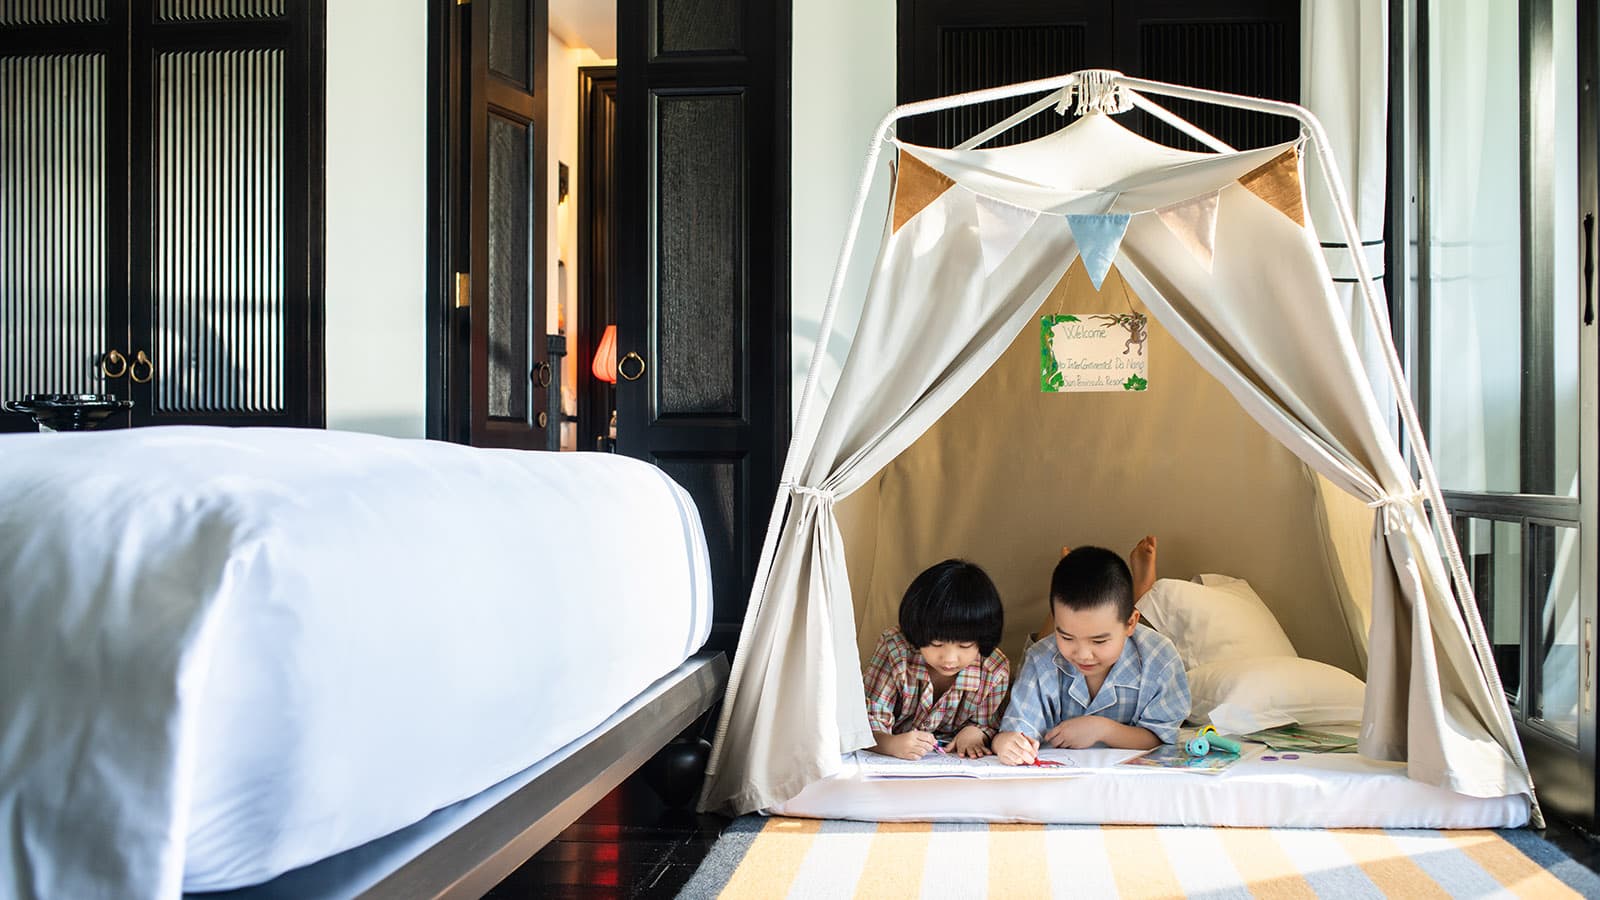 “Cắm trại trong phòng” – gói trải nghiệm lý thú dành cho khách hàng nhí tại InterContinental Danang